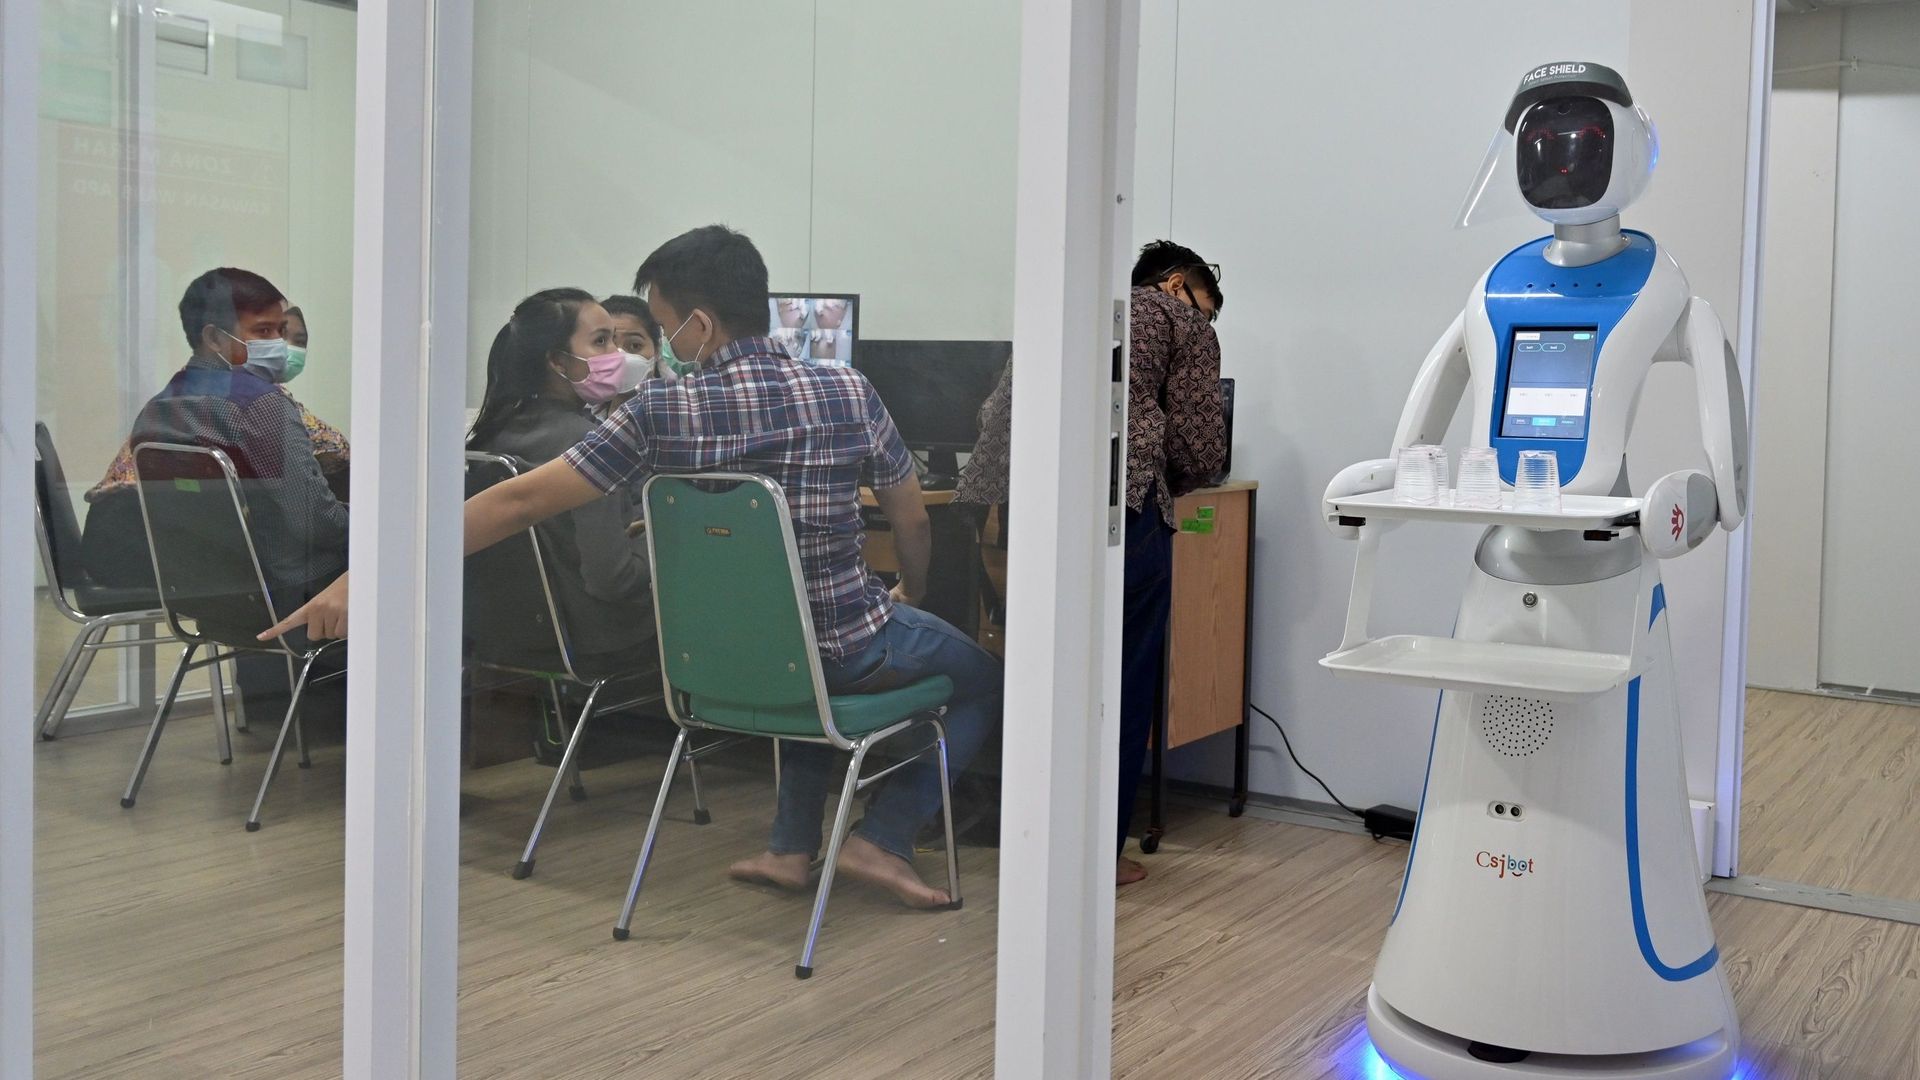 Des scientifiques de Singapour ont inventé un robot désinfectant qui imite les gestes humains afin d'aider le personnel de nettoyage débordé depuis le début de la crise du coronavirus